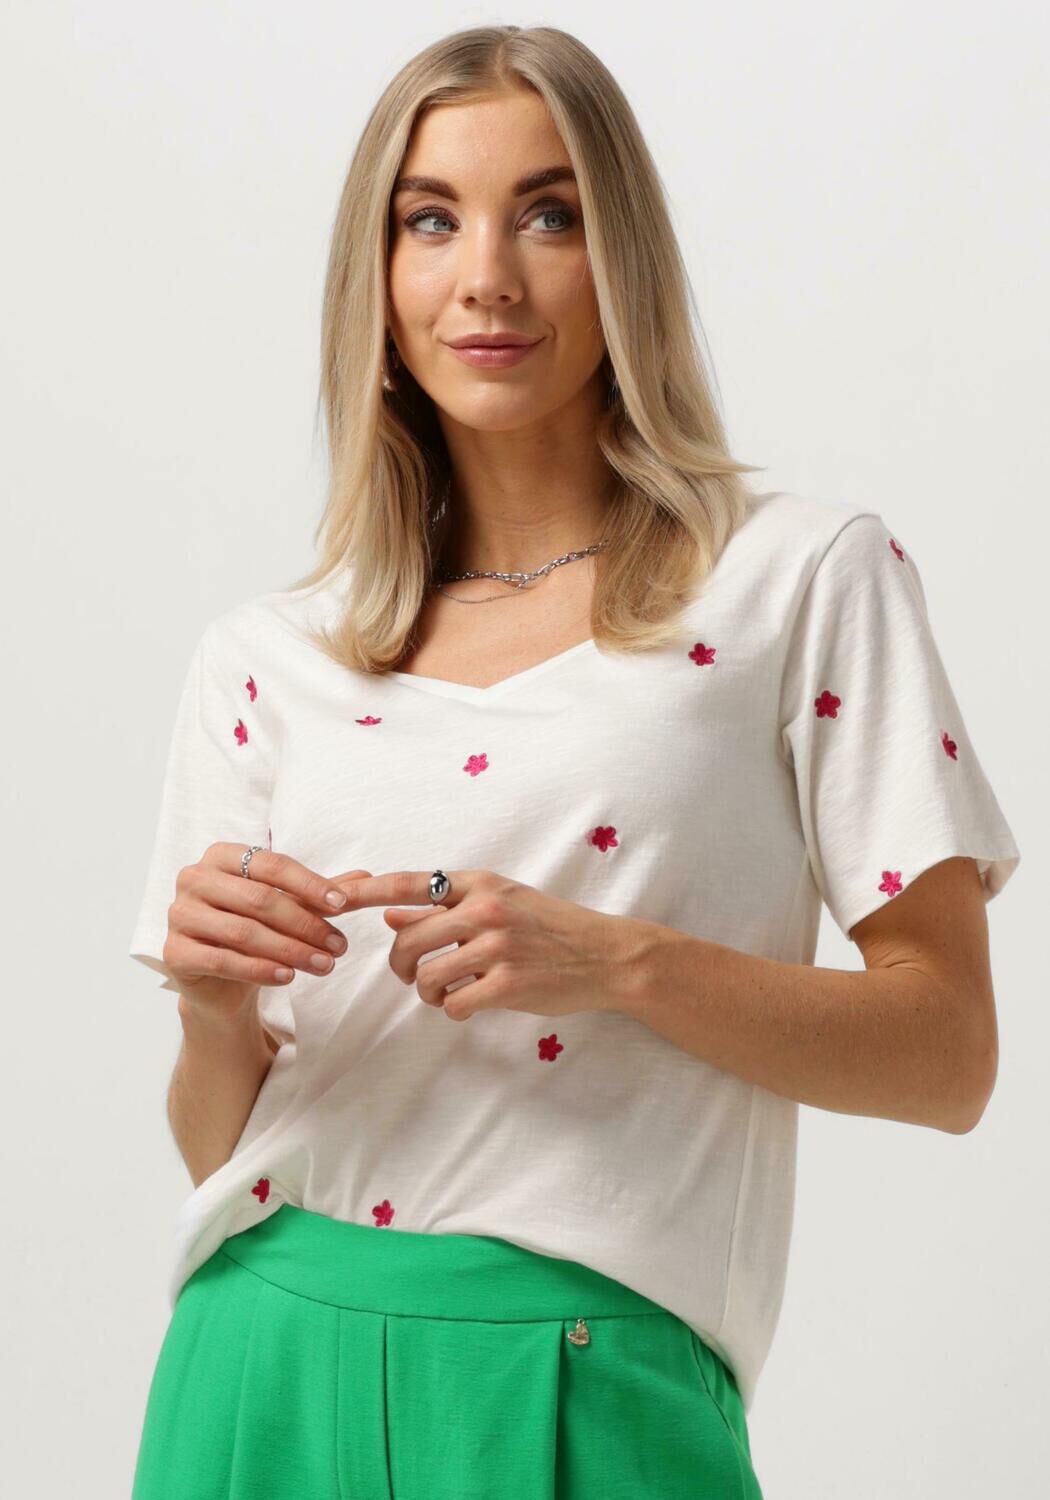 FABIENNE CHAPOT Dames Tops & T-shirts Phill V-neck Pink Flower T-shirt Ecru